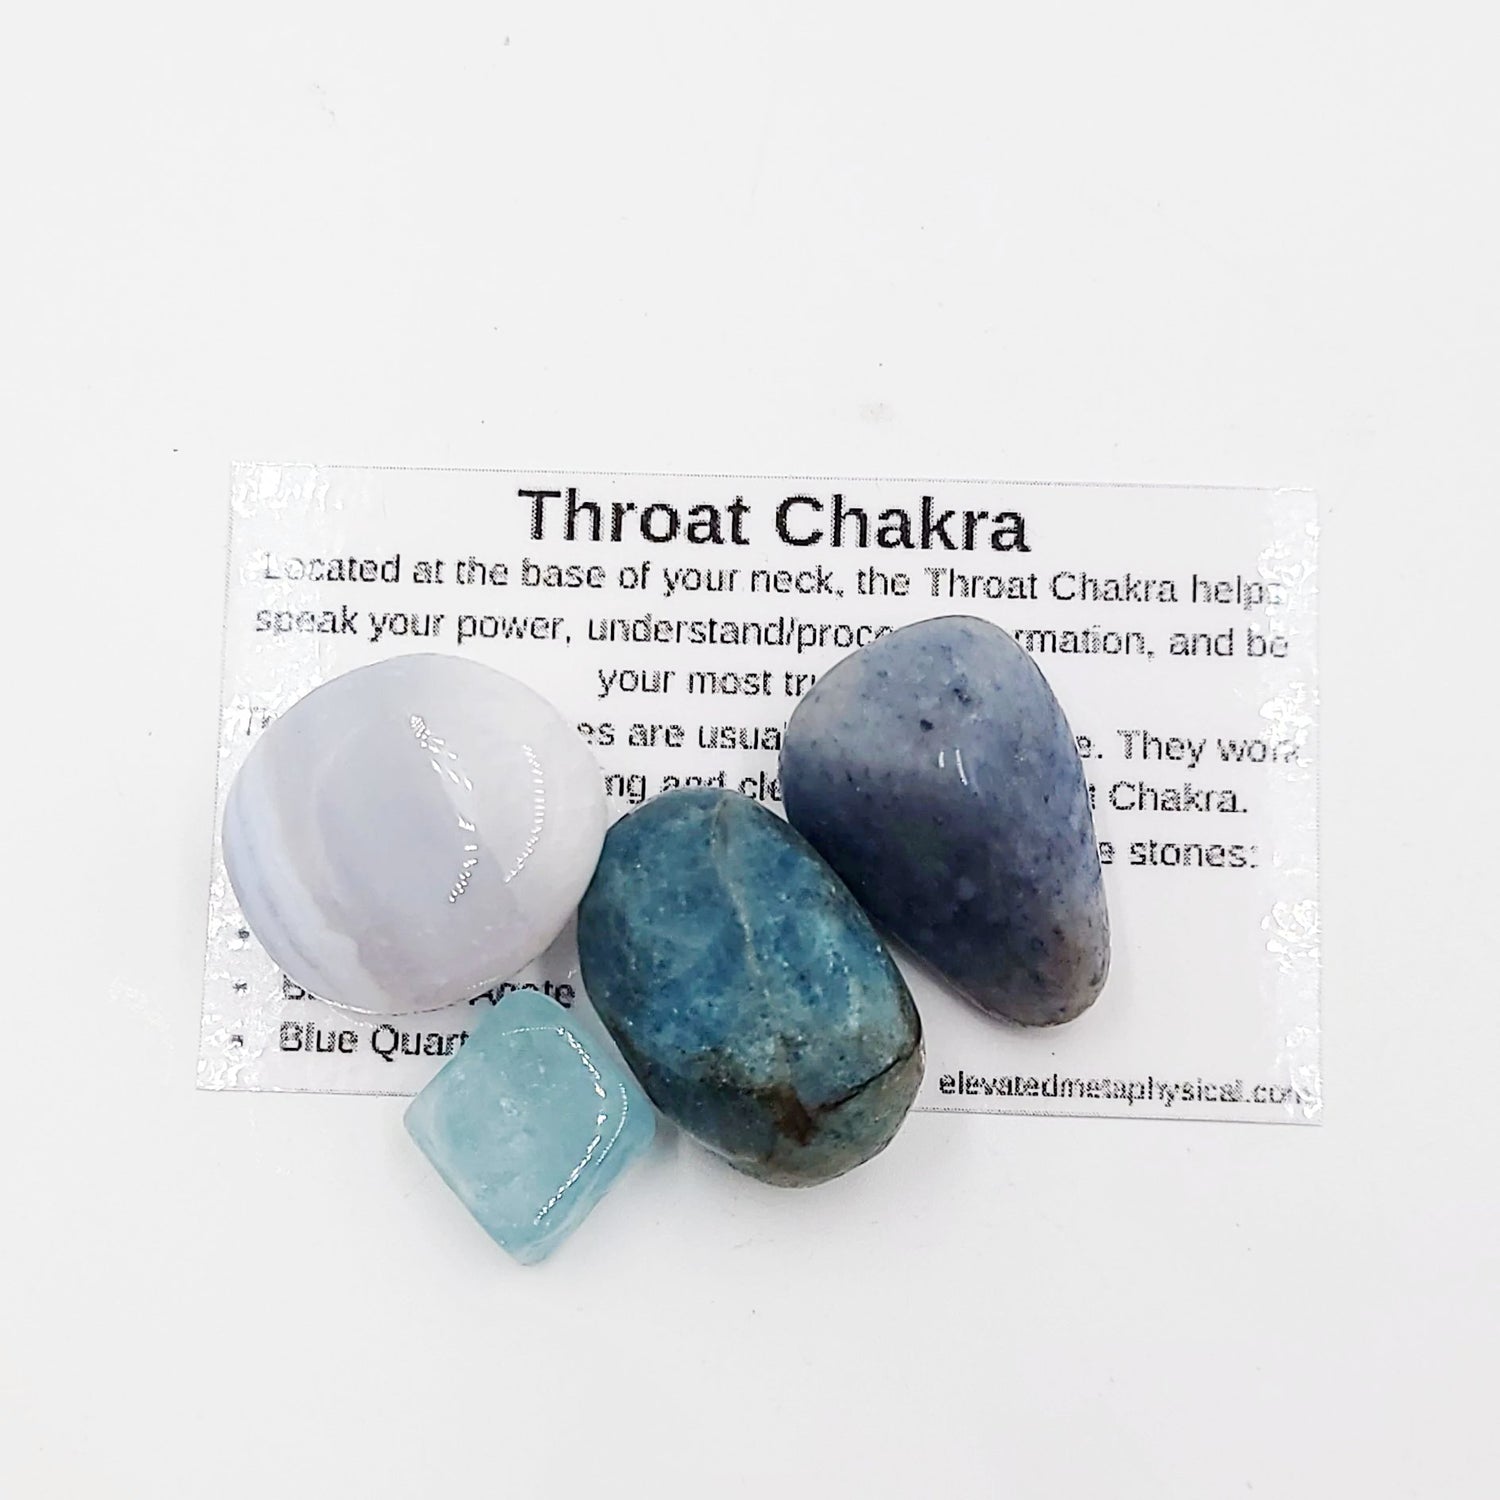 Throat Chakra Stone Set - Elevated Metaphysical